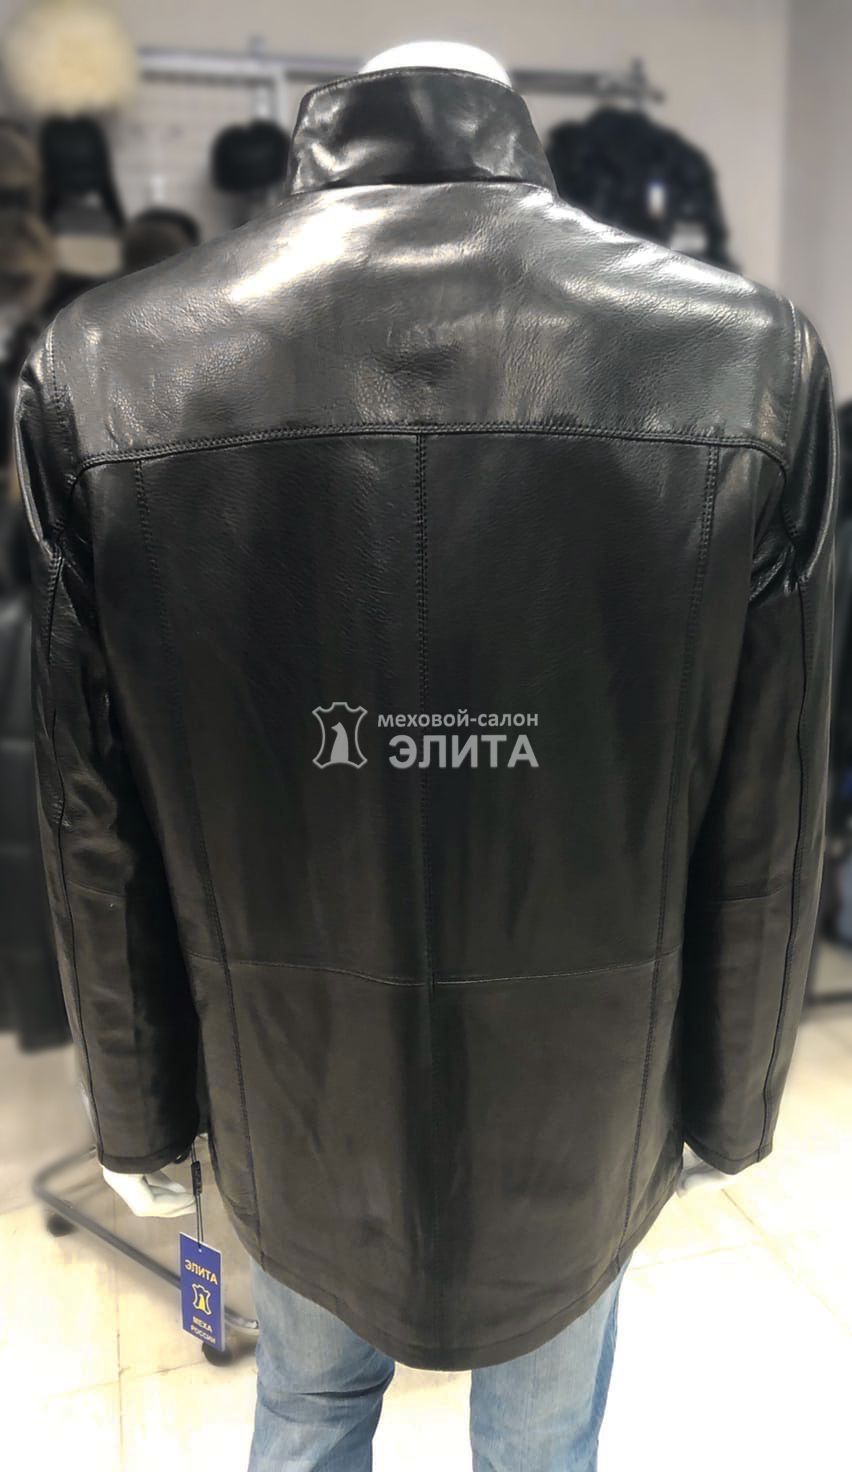 Куртка из натуральной кожи м.BN8735  р-р 56-58, цена 19400 рублей в интернет-магазине кожи и меха ЭЛИТА. Вид 2